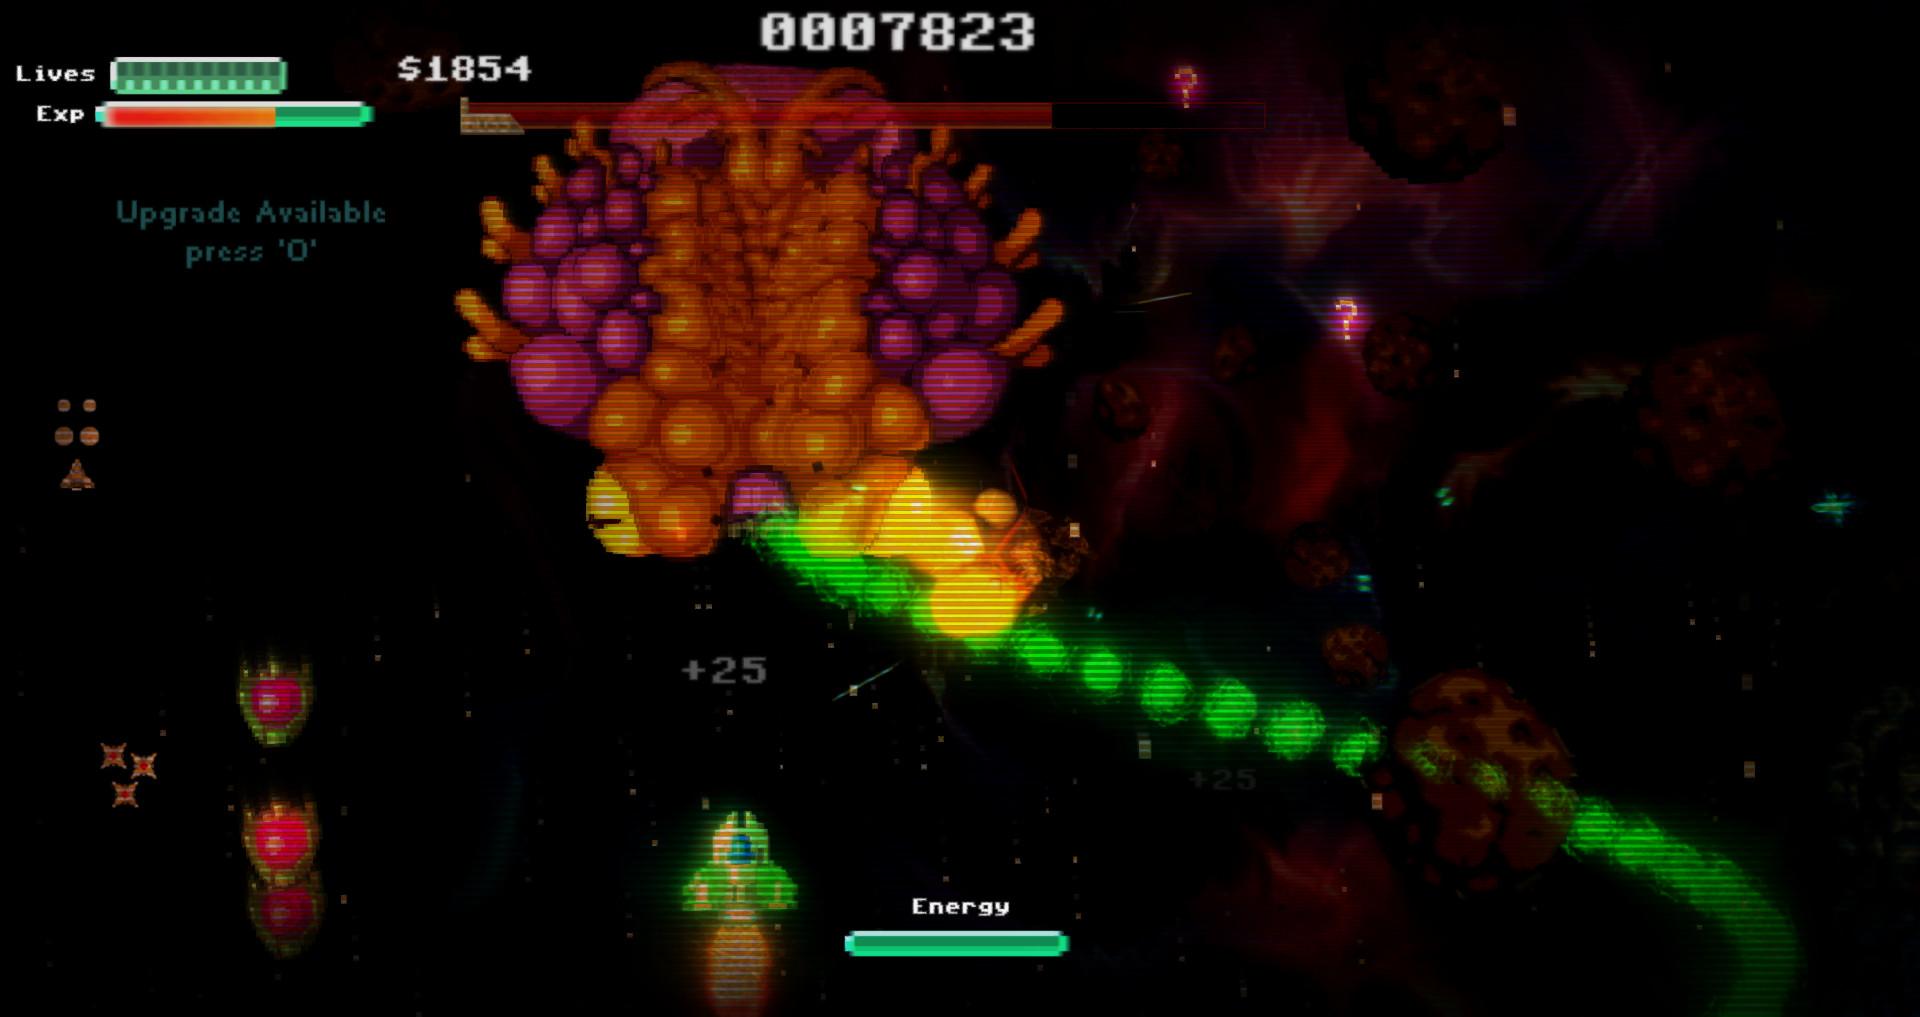 Screenshot №3 from game Star Drifter